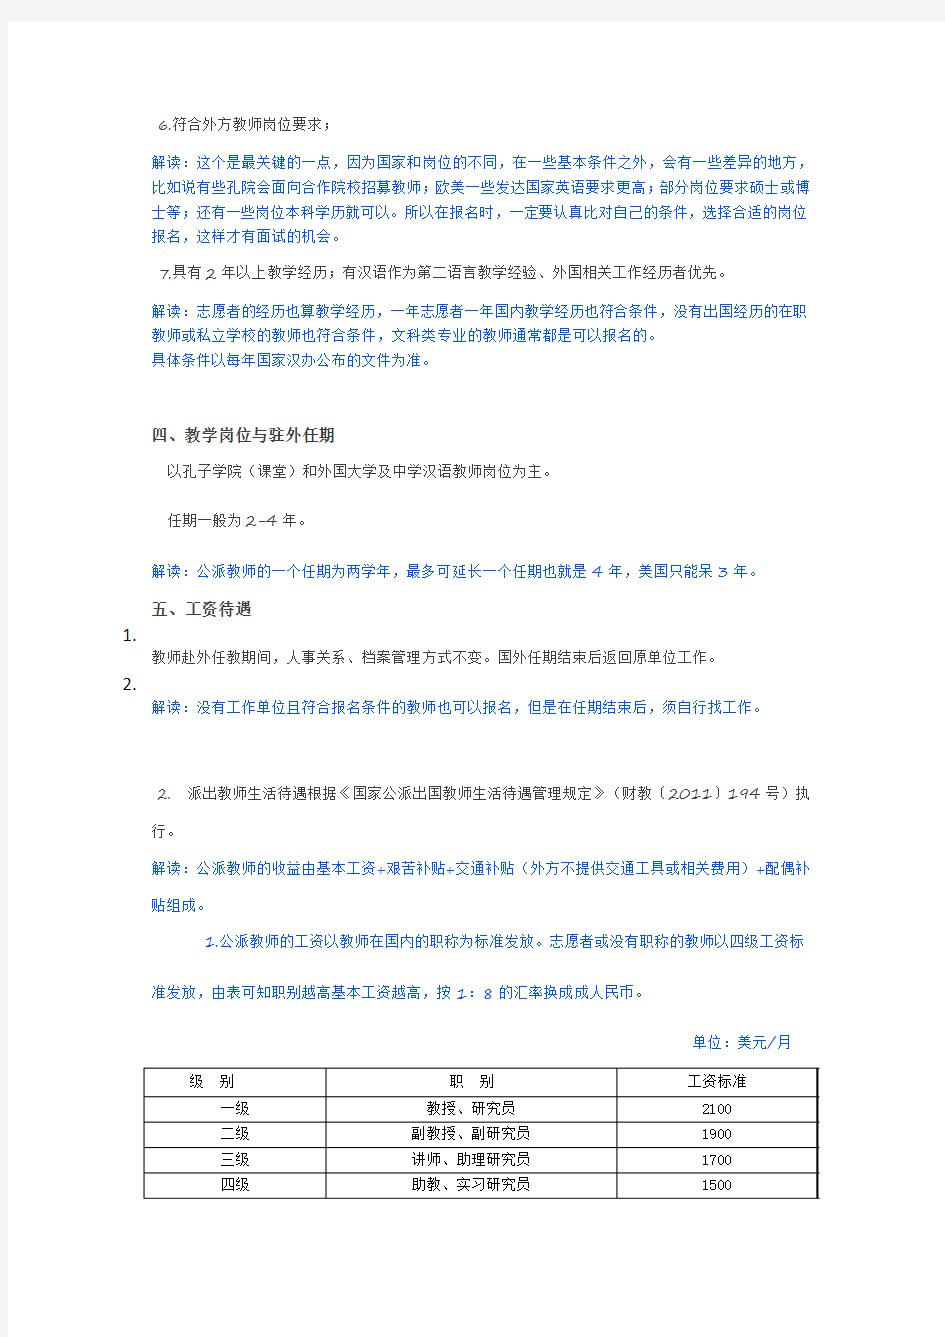 (扫盲)国家公派汉语教师项目详细介绍